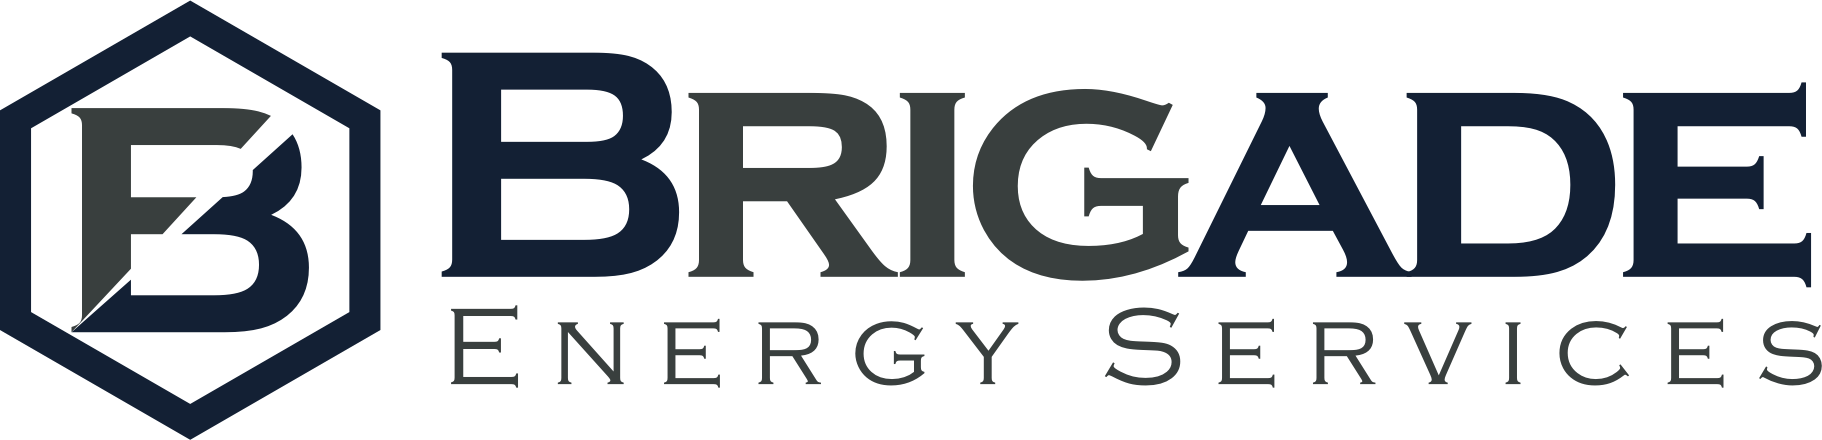 Brigade Energy Services